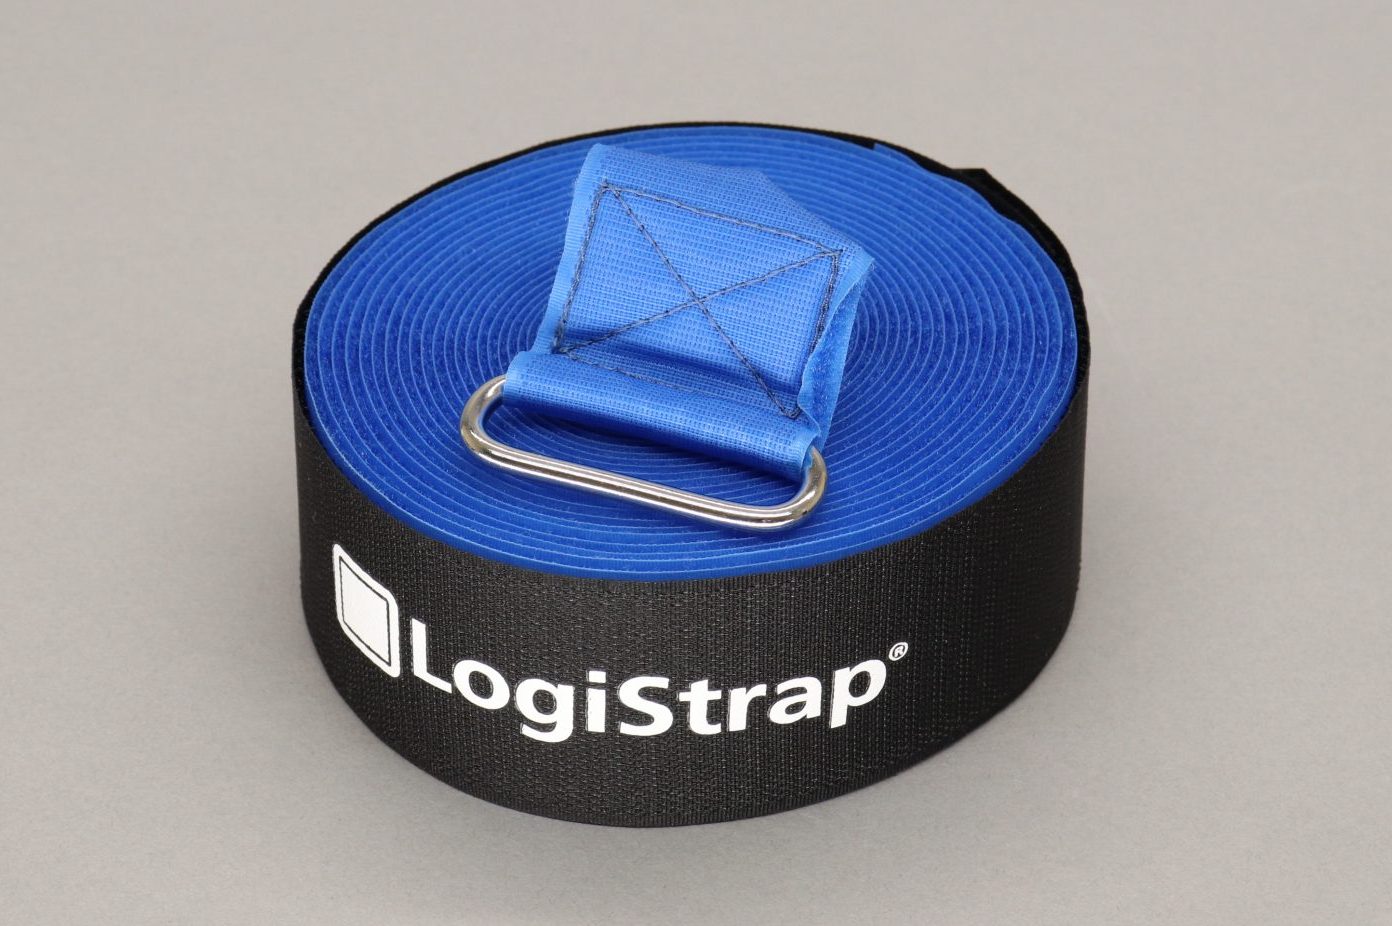 7m LogiStrap® Strap